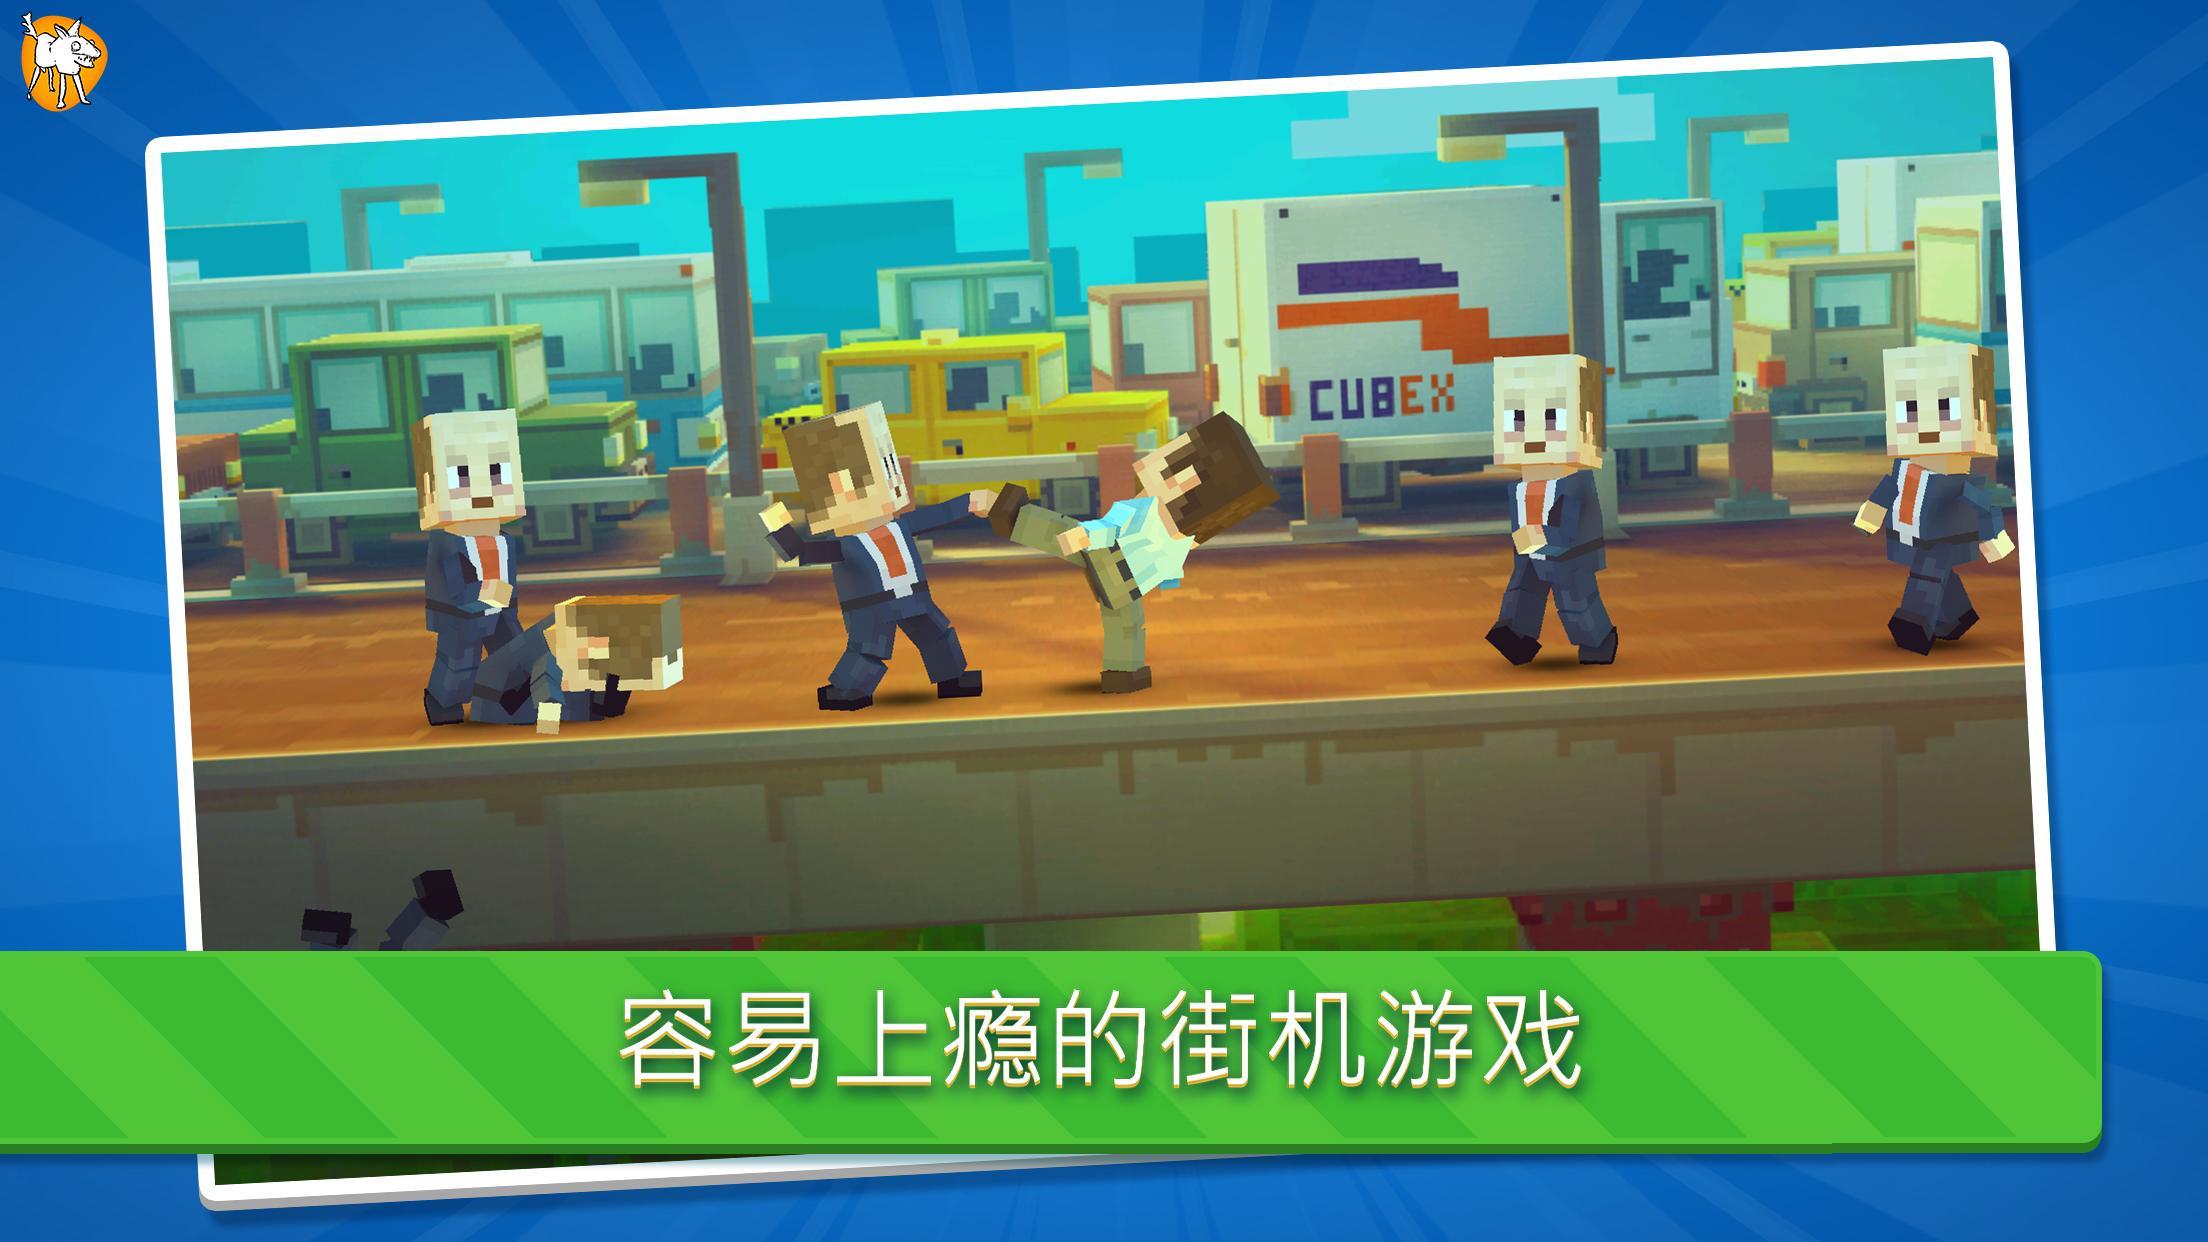 Rush Fight screenshot game